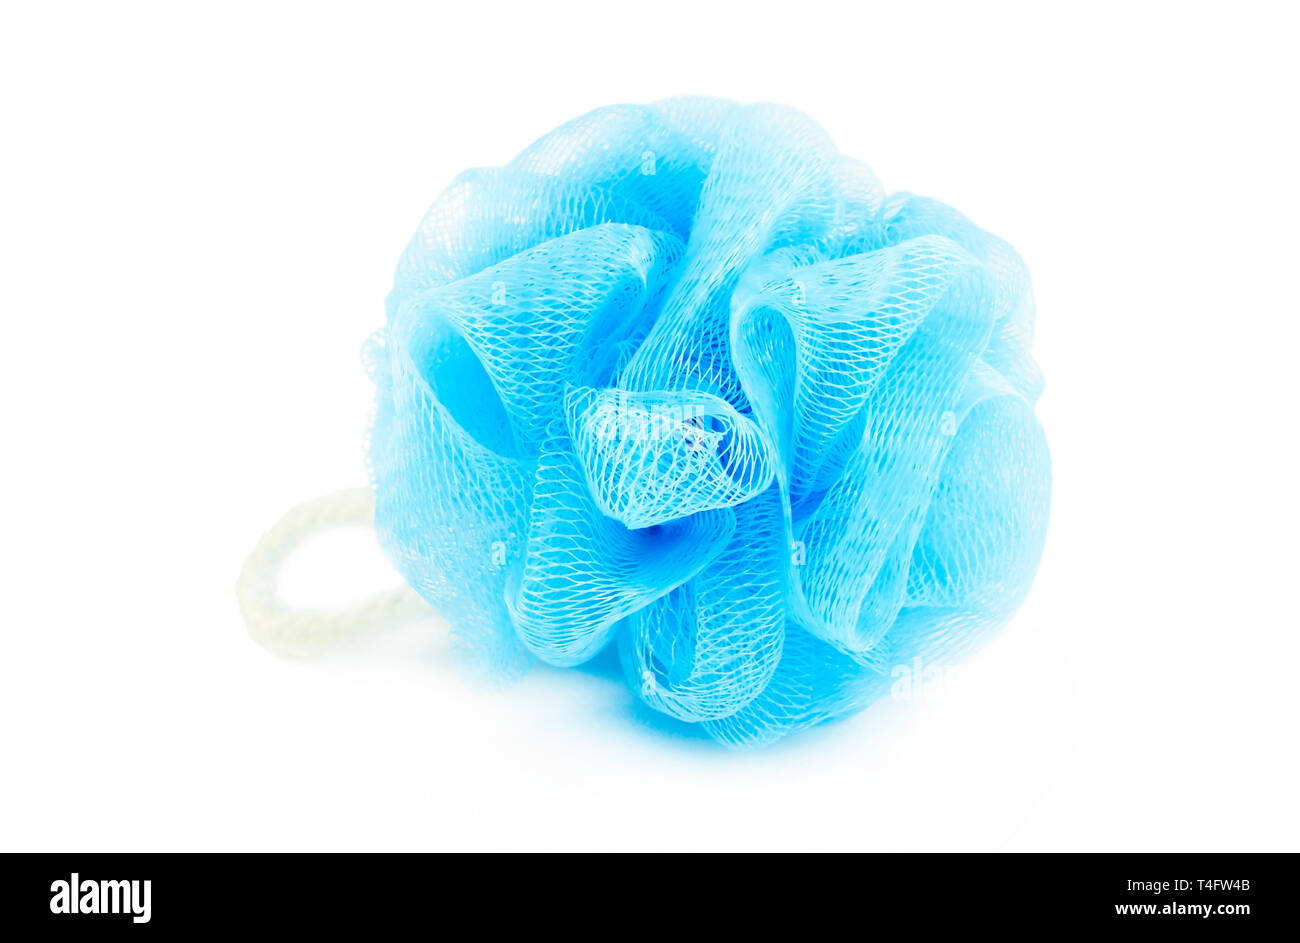 Weiche blaue synthetischen Schwamm zum Duschen auf Weiß isoliert  Stockfotografie - Alamy